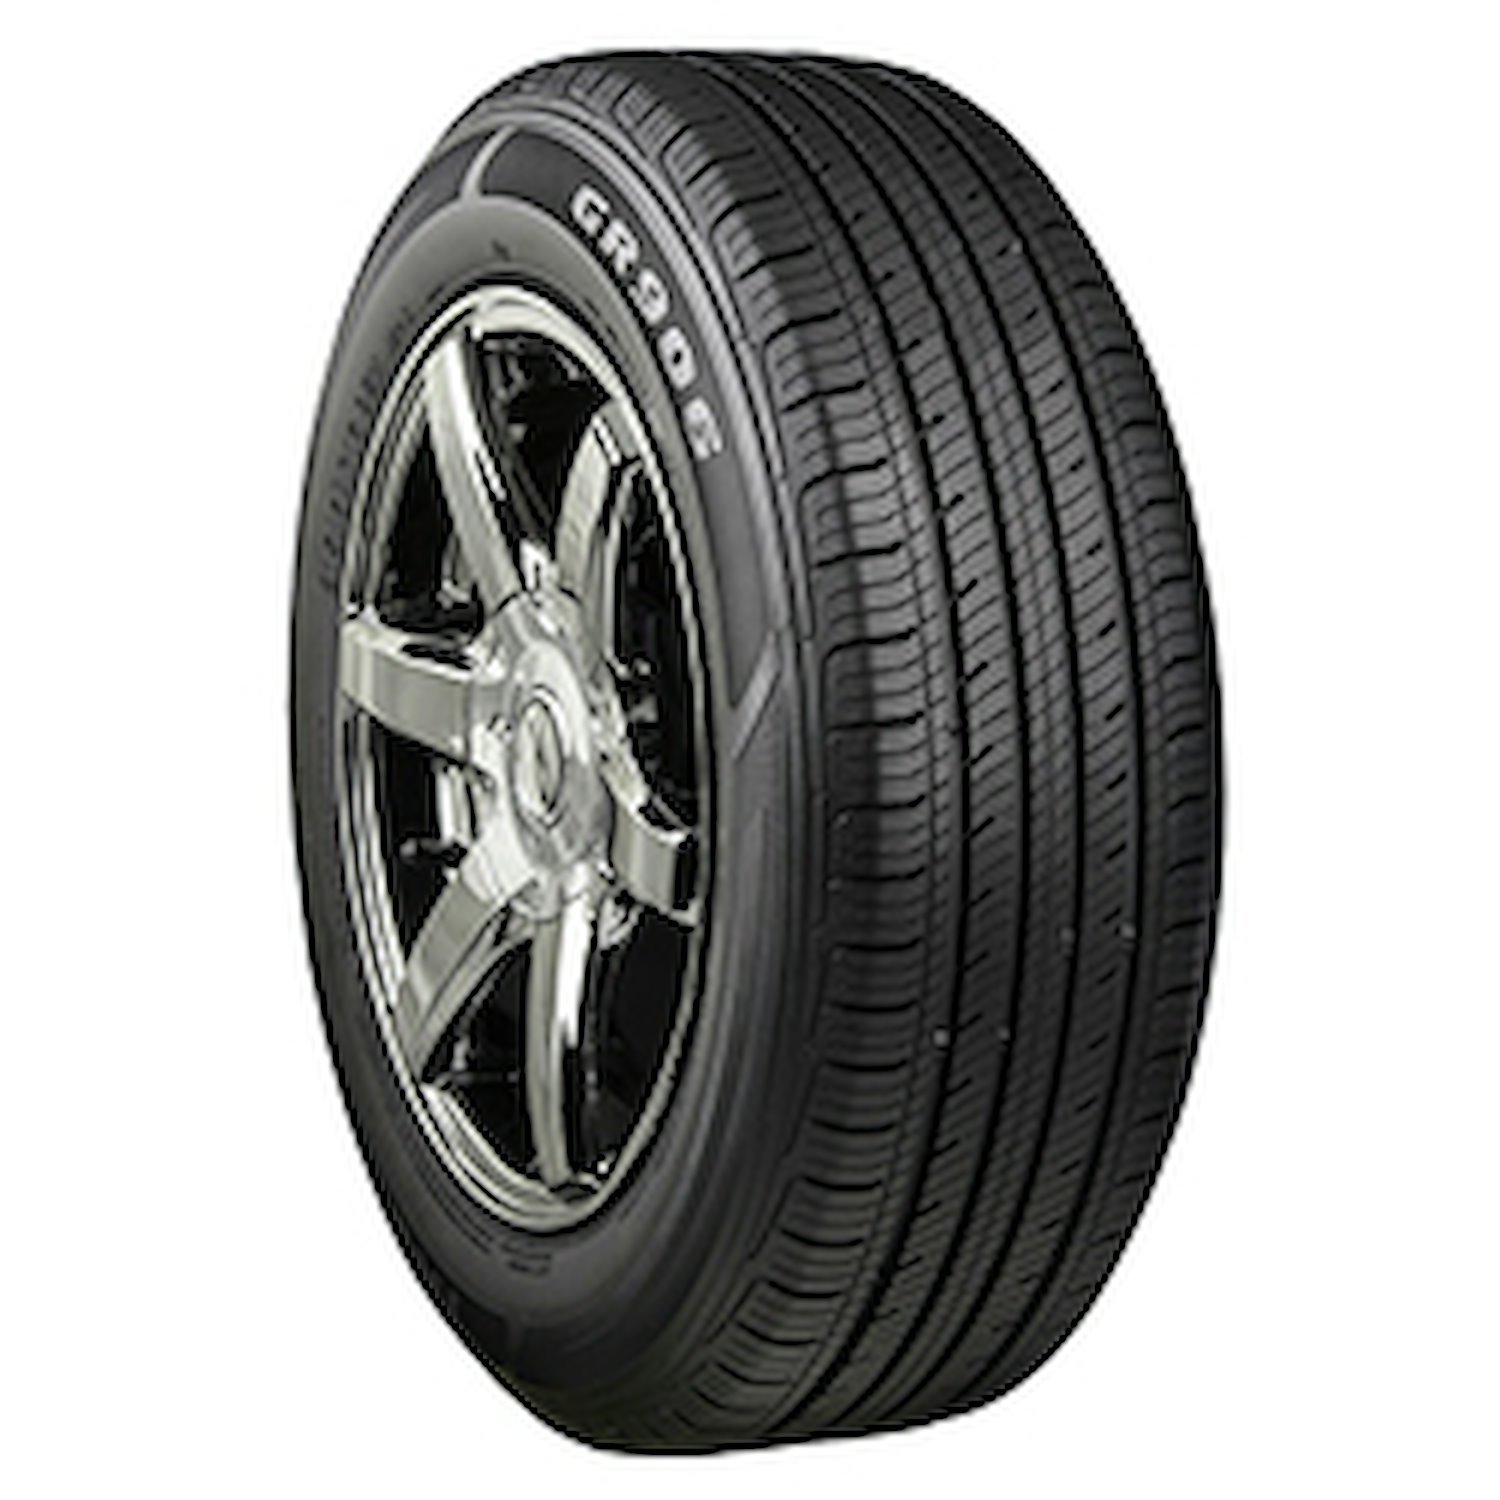 GR906 Tire, 185/65R15 88H